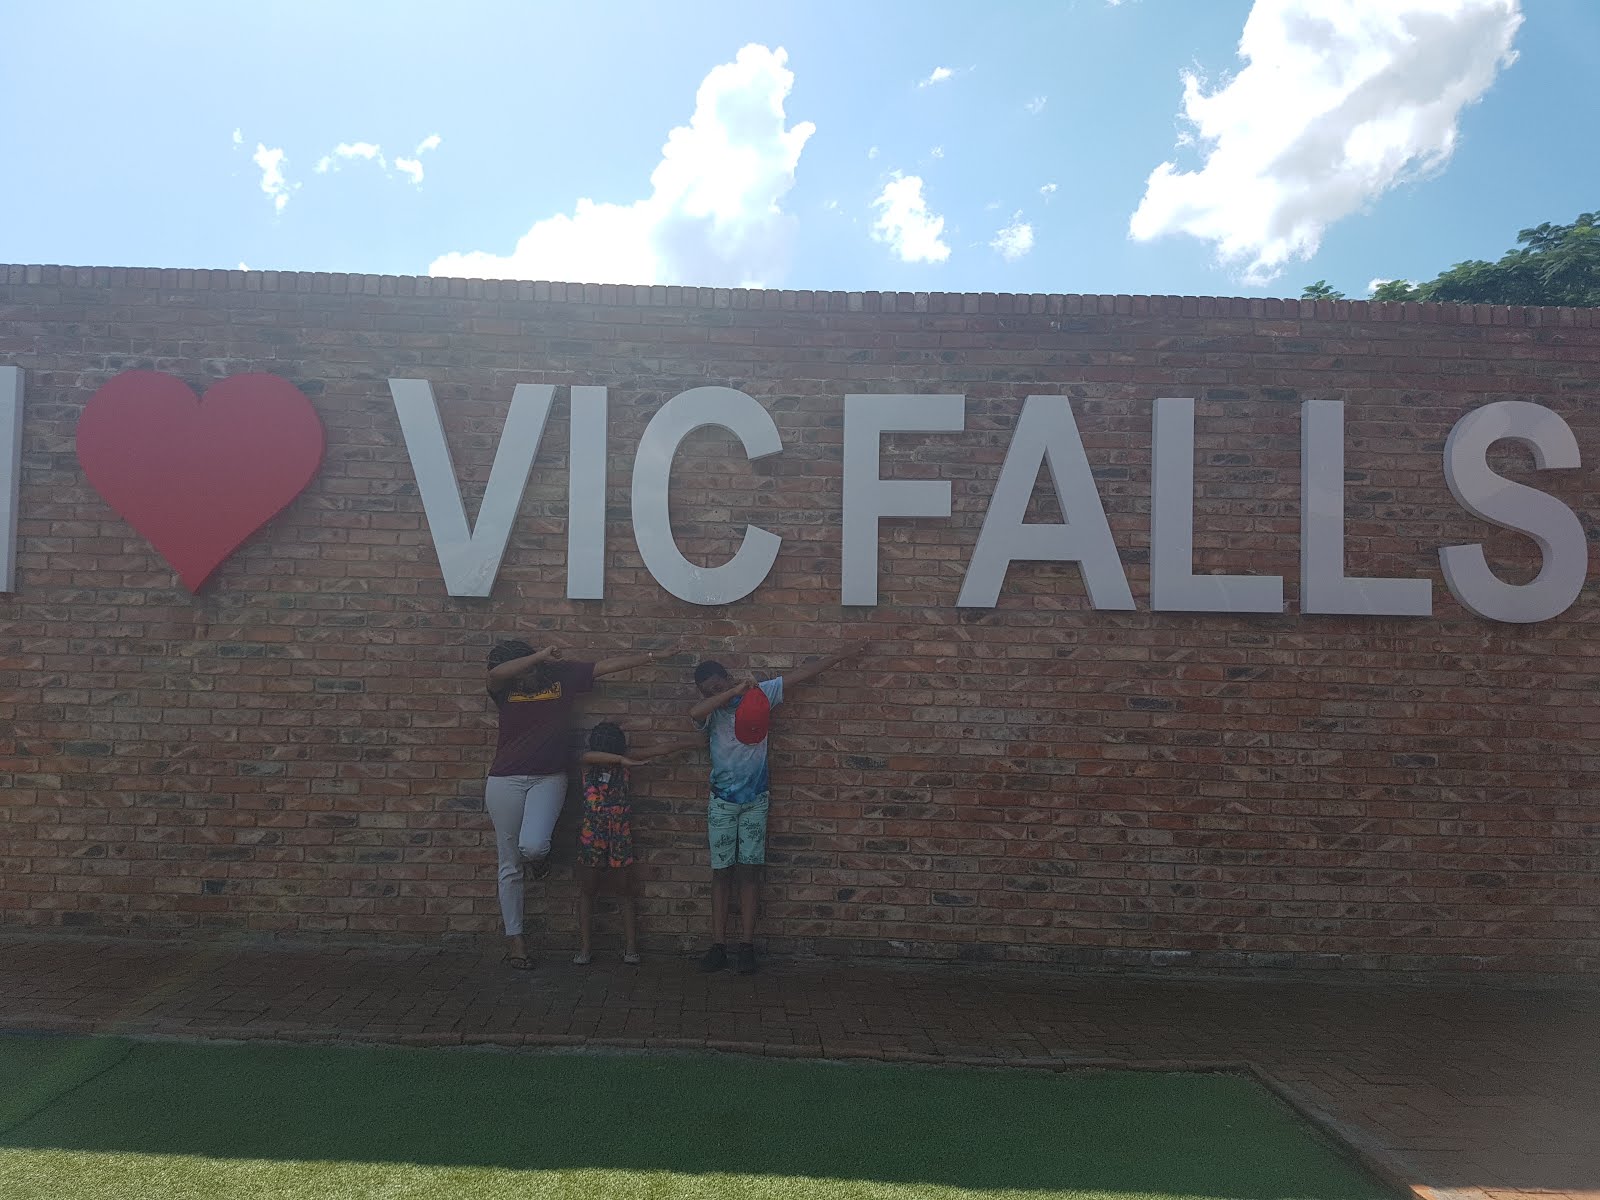 Gotta love Victoria Falls